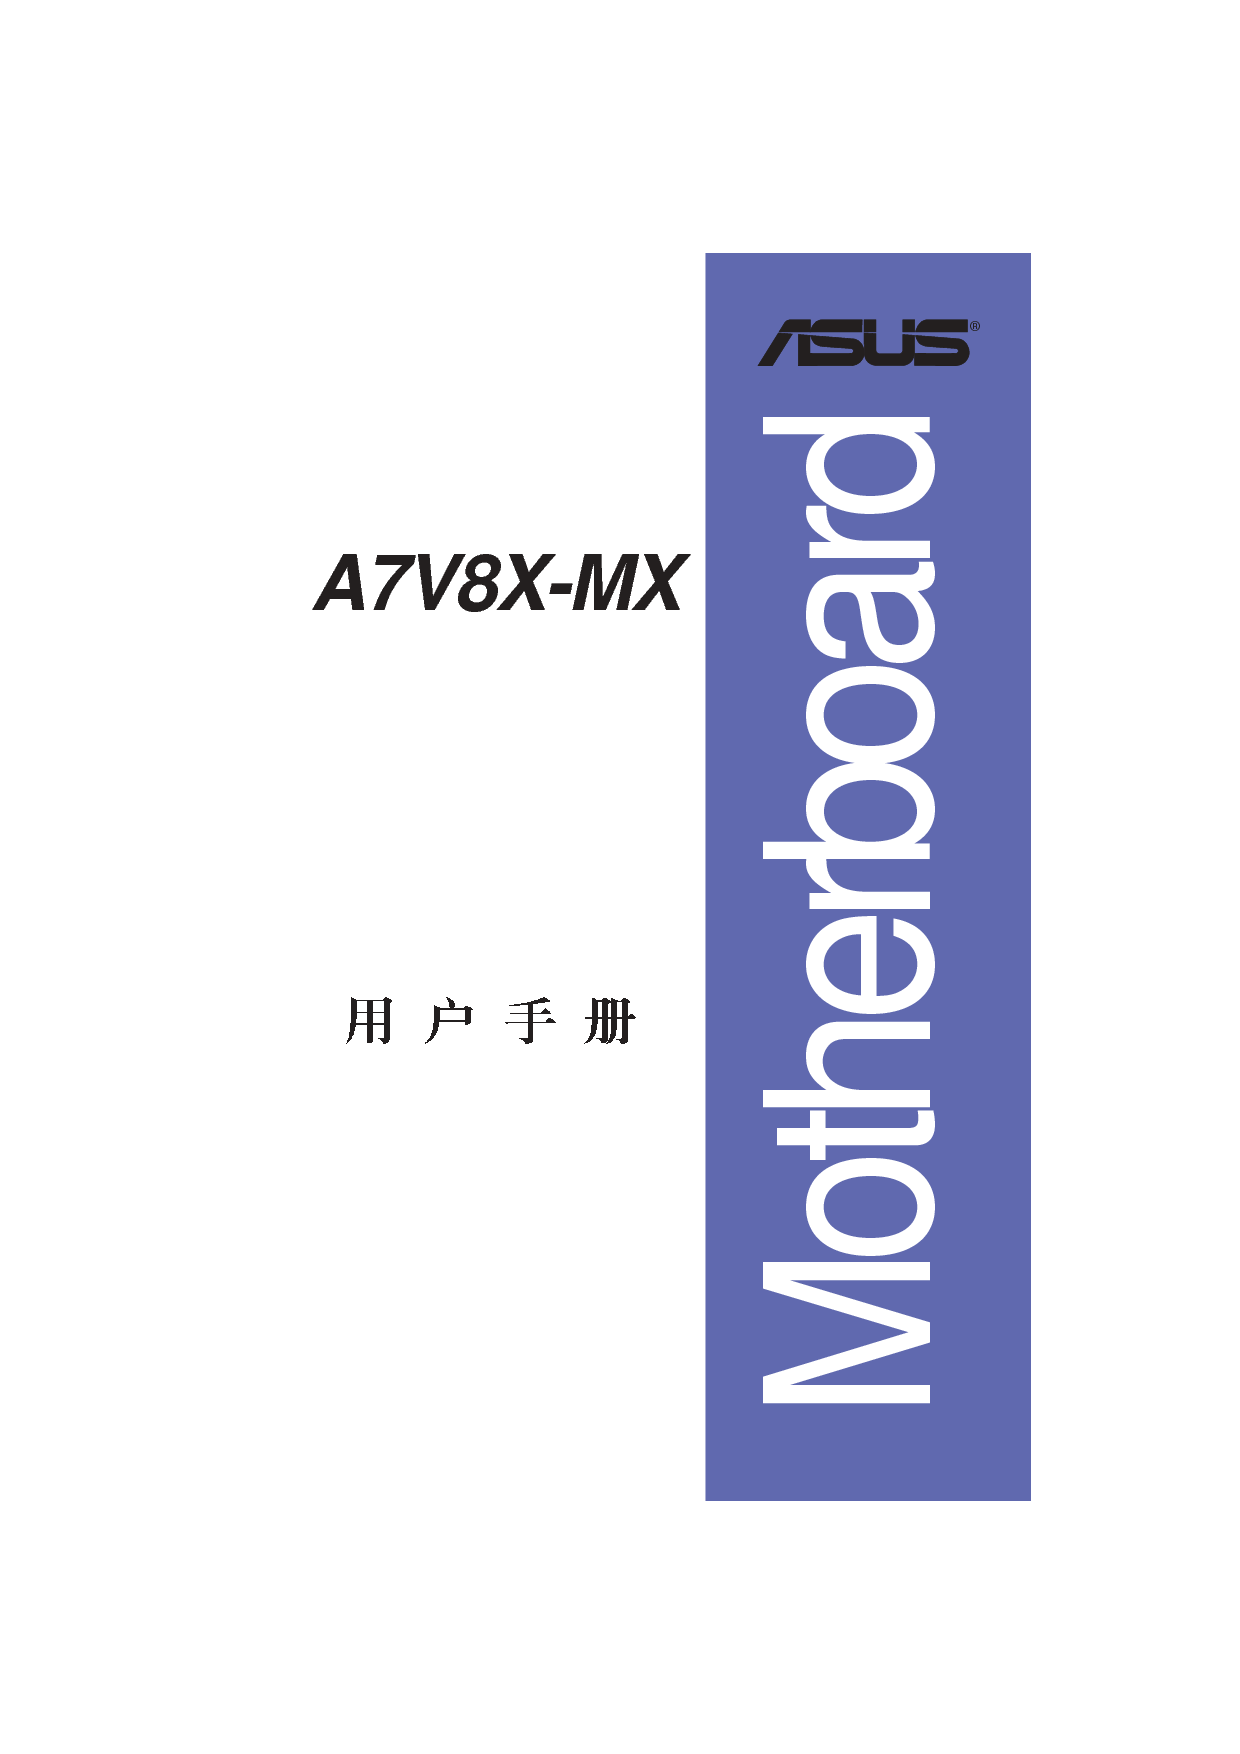 华硕 Asus A7V8X-MX 用户手册 封面